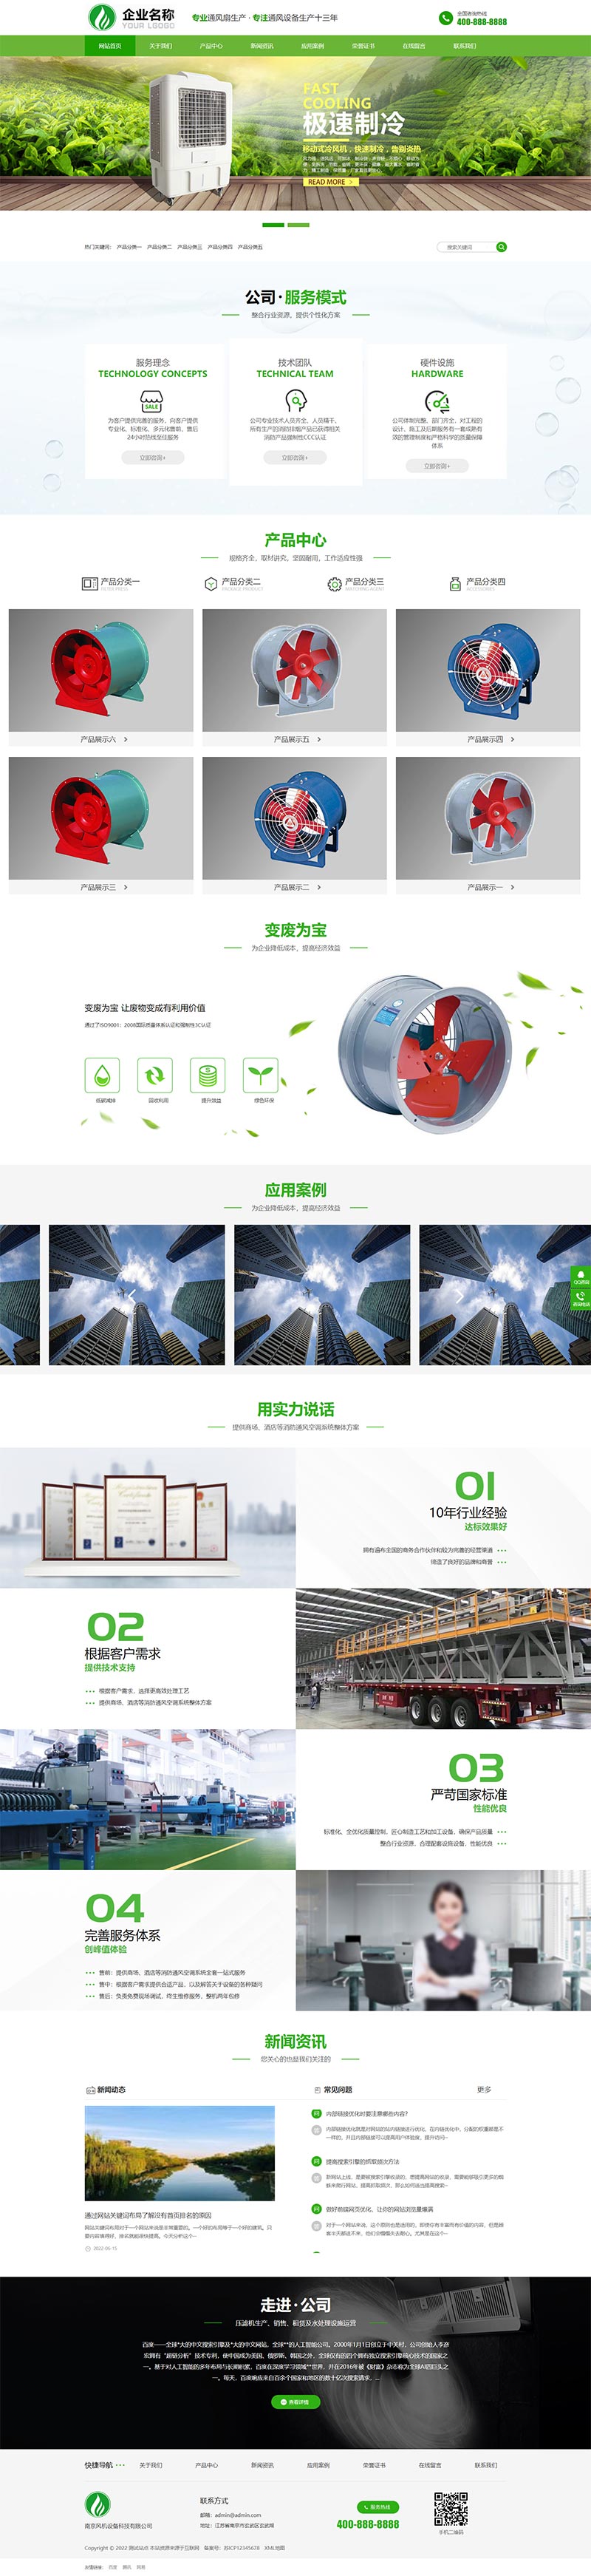 响应式HTML5绿色大气环保机电网站模板 风机机械设备企业营销型网站源码下载